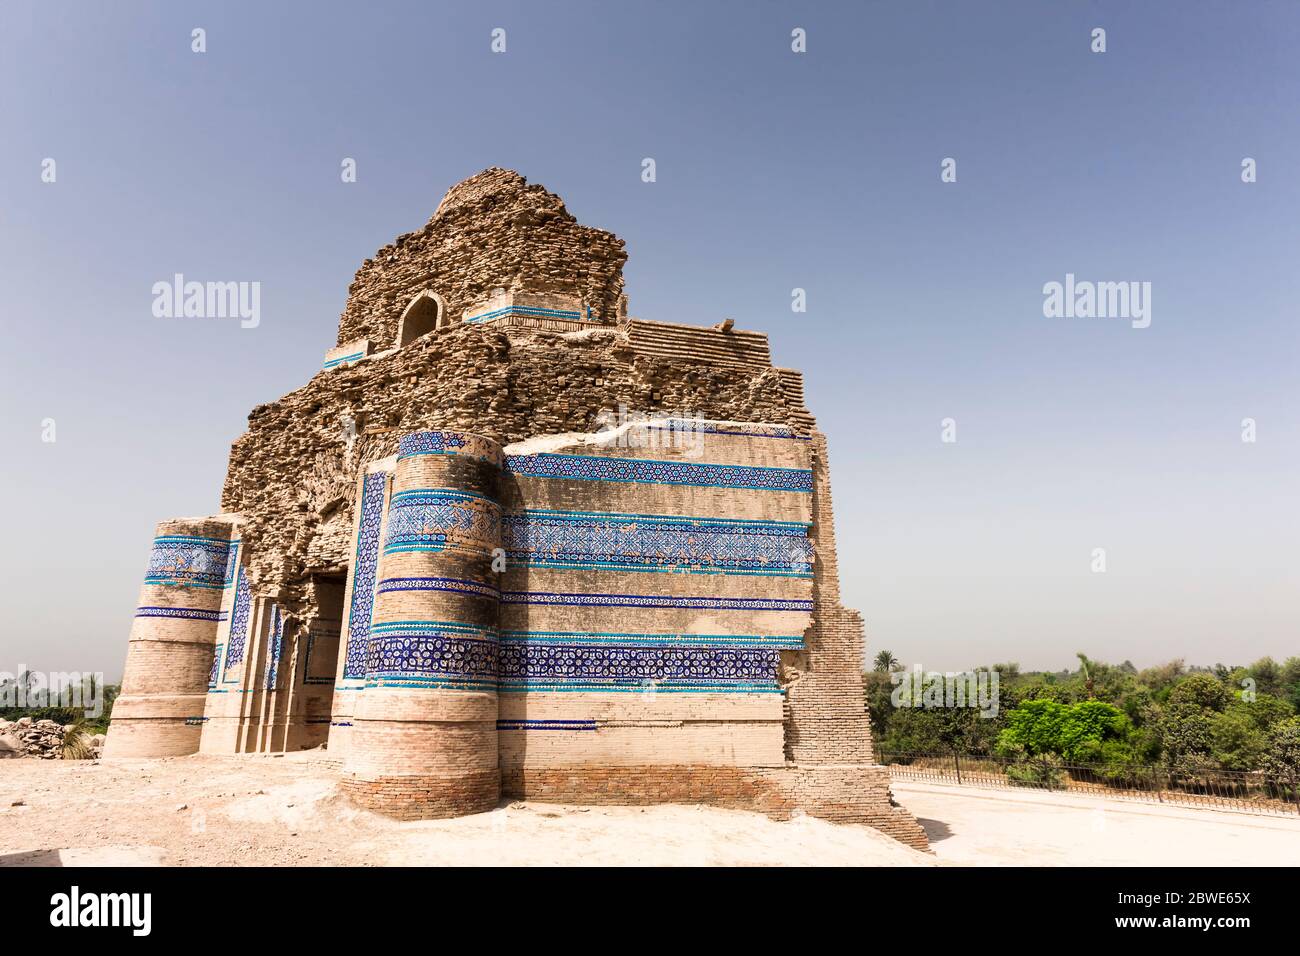 Tombe de Bibi Jawindi à la nécropole de l'UCH, UCH Sharif, district de Bahawalpur, province du Punjab, Pakistan, Asie du Sud, Asie Banque D'Images